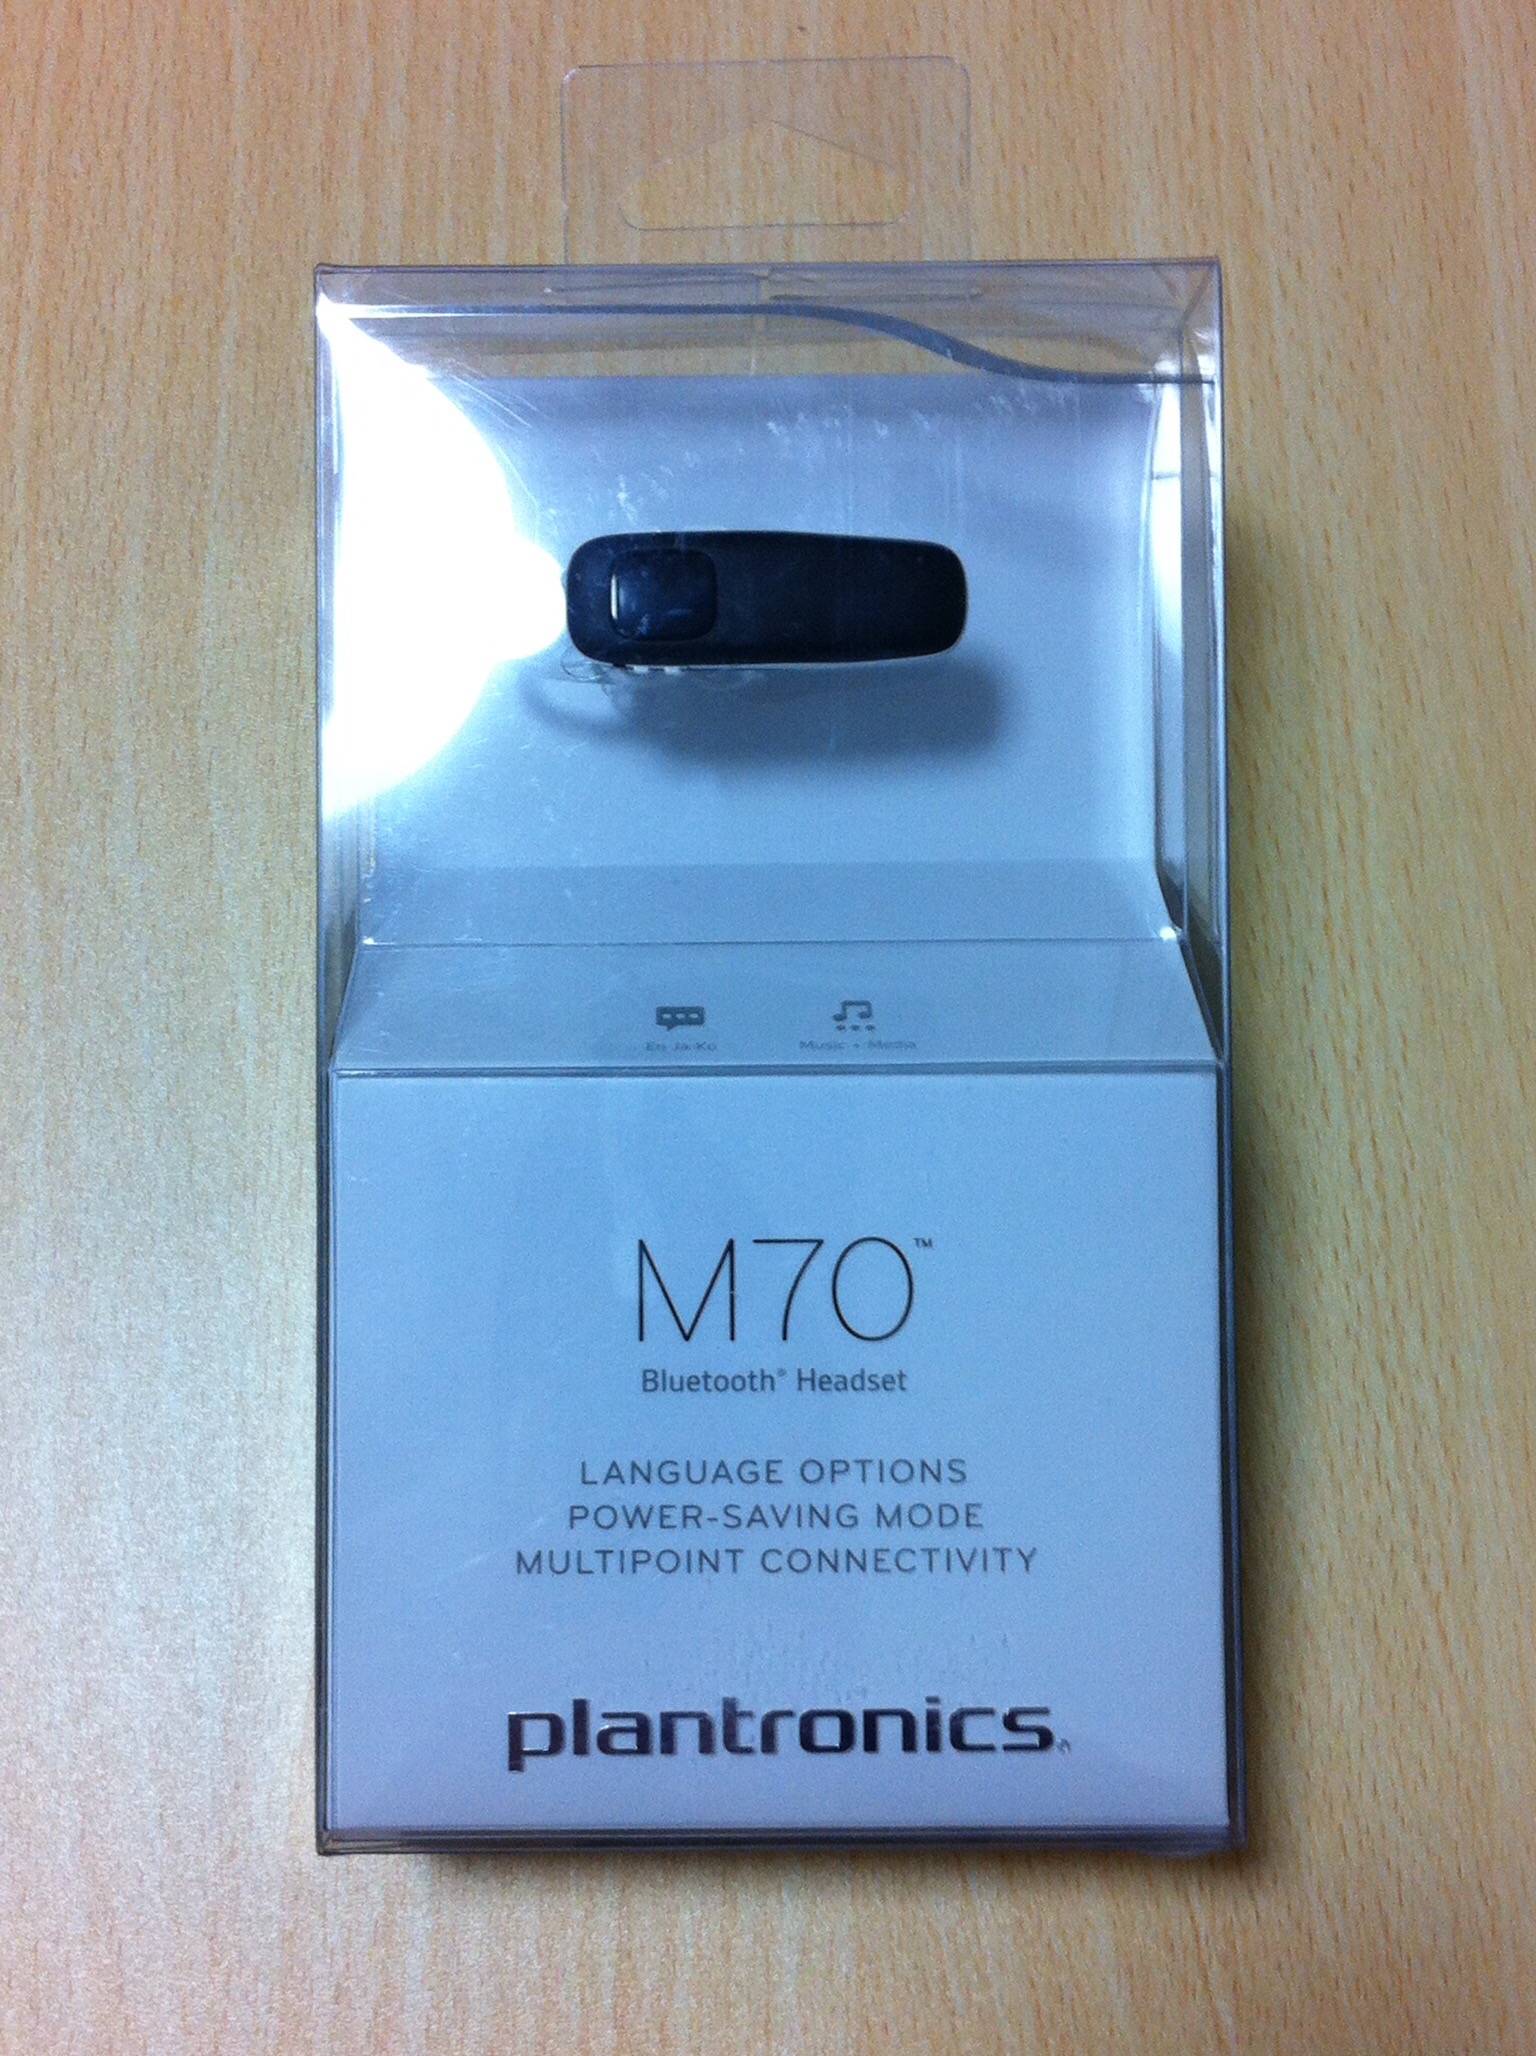 片耳ワイヤレスイヤホンならBluetoothヘッドセット「PLANTRONICS M70 